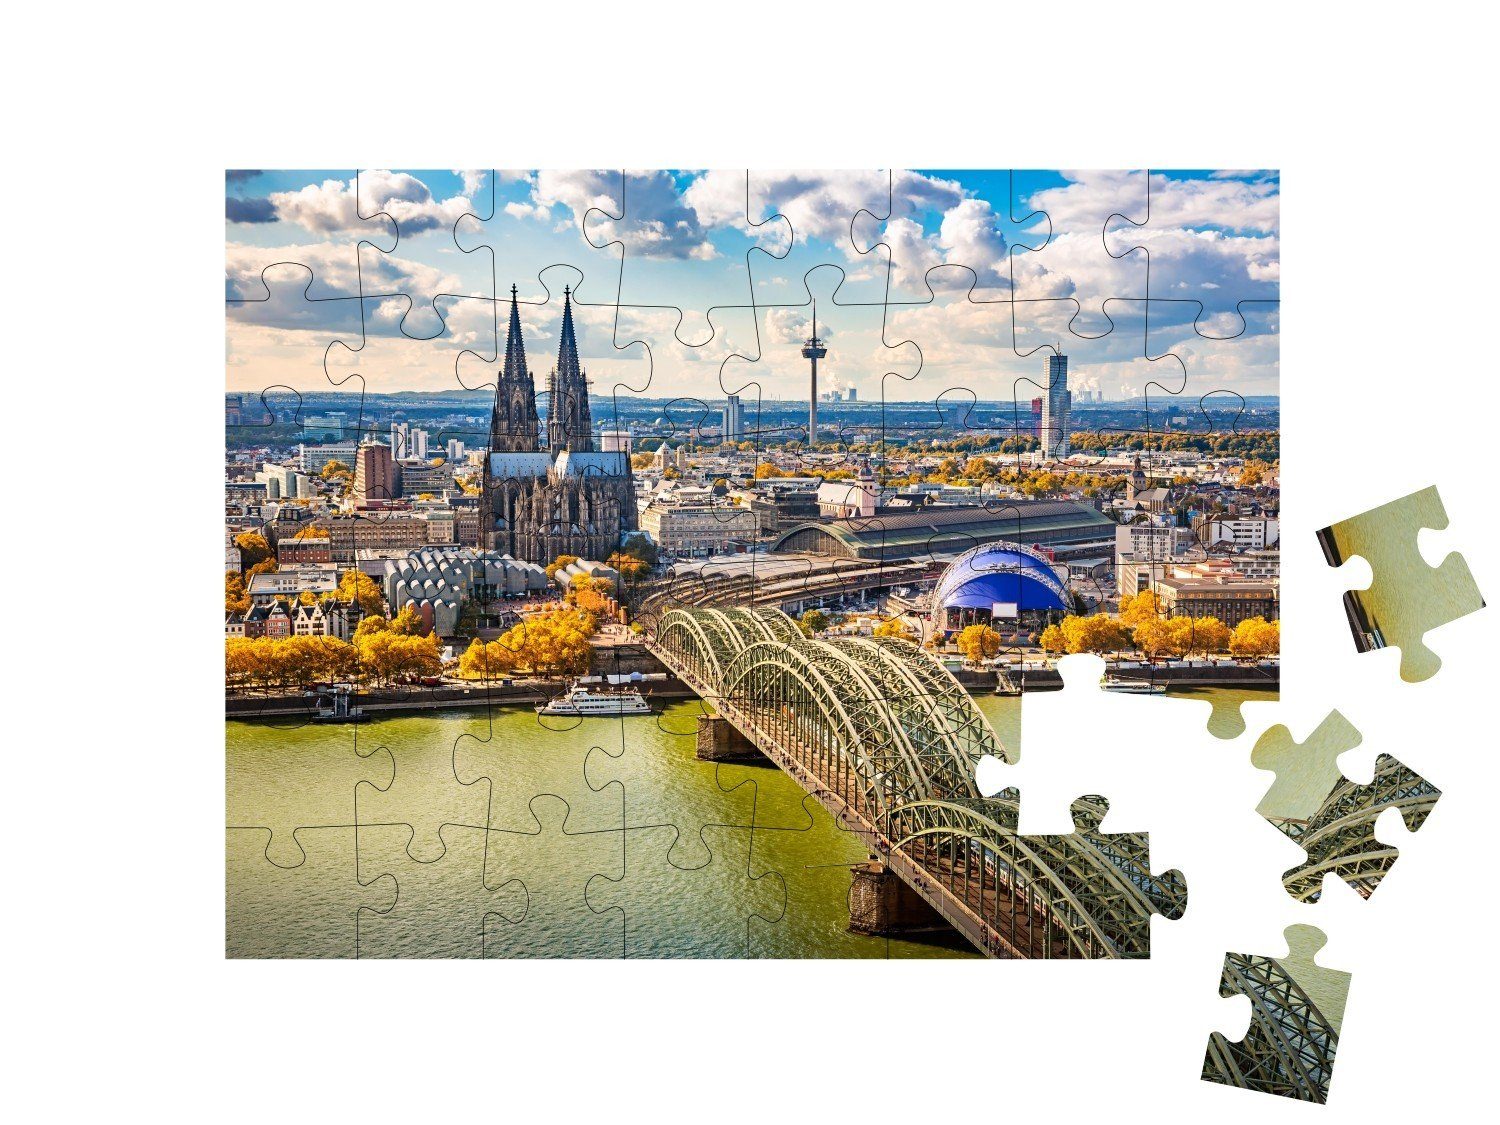 puzzleYOU Puzzle Luftbildaufnahme von Köln, Deutschland, 48 Puzzleteile,  puzzleYOU-Kollektionen Köln, Leicht, 500 Teile, Kölner Dom, 1000 Teile